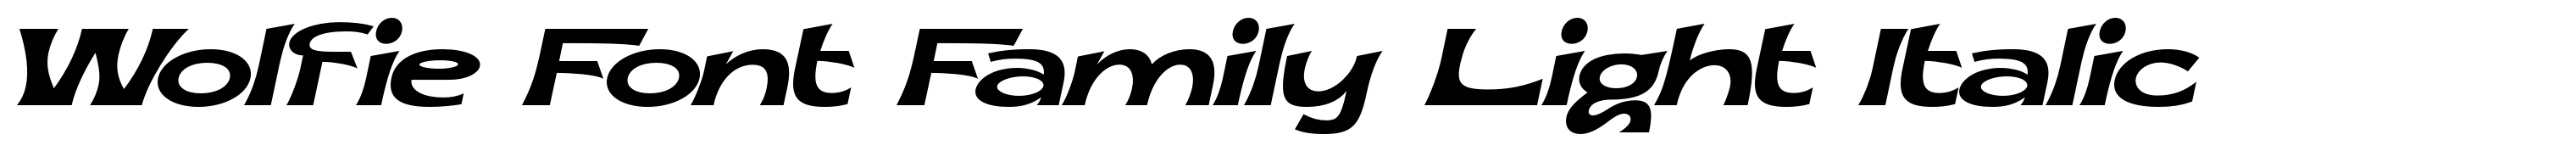 Wolfie Font Family Light Italic